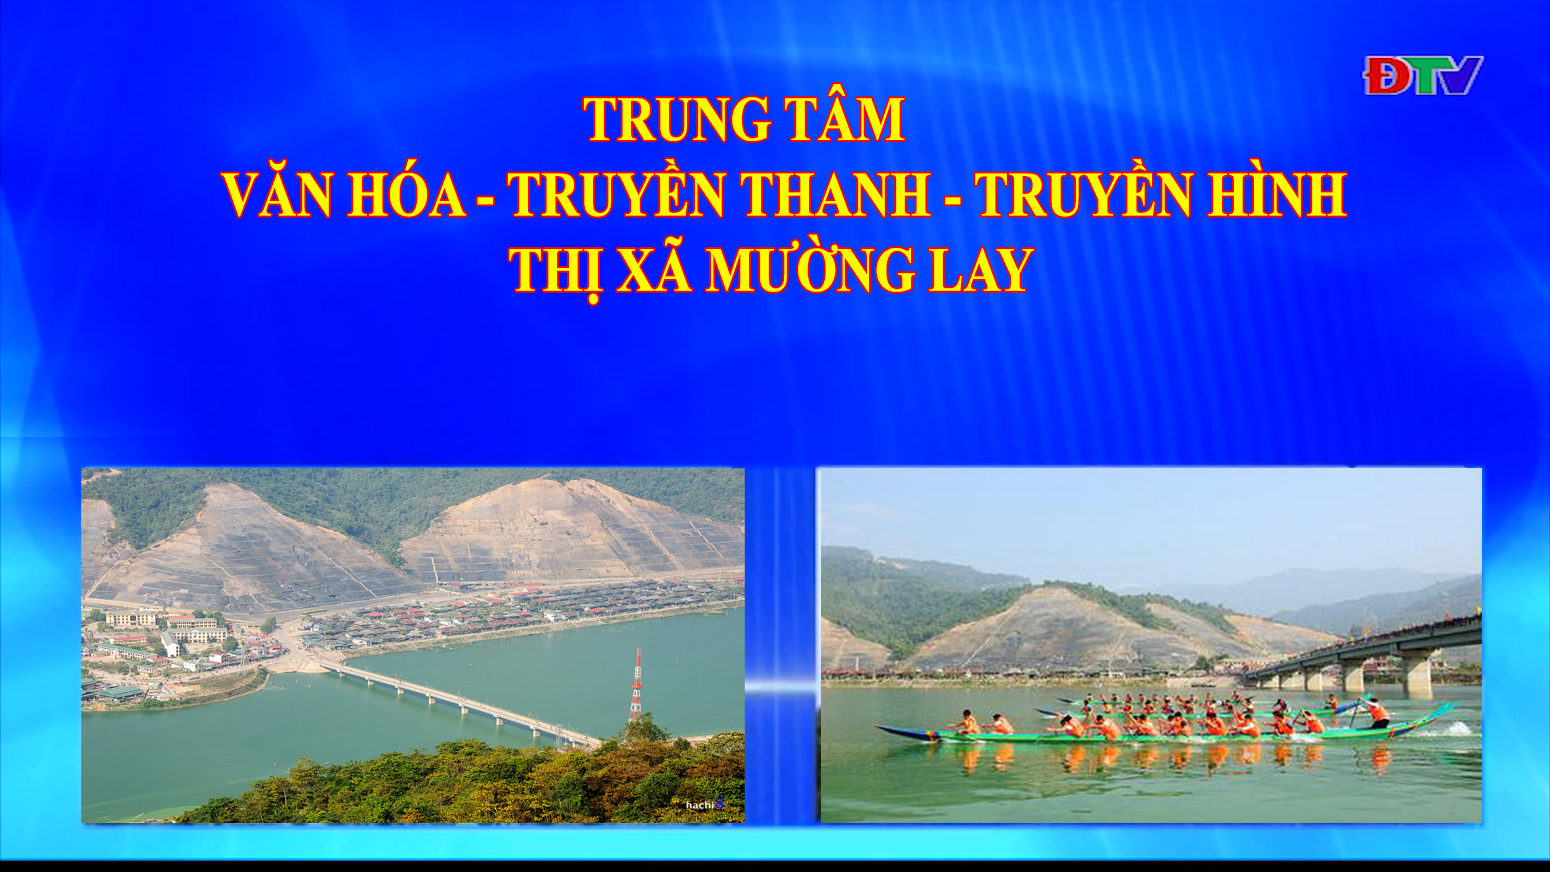 Trung tâm VH-TTTH thị xã Mường Lay (Ngày 17-12-2021)